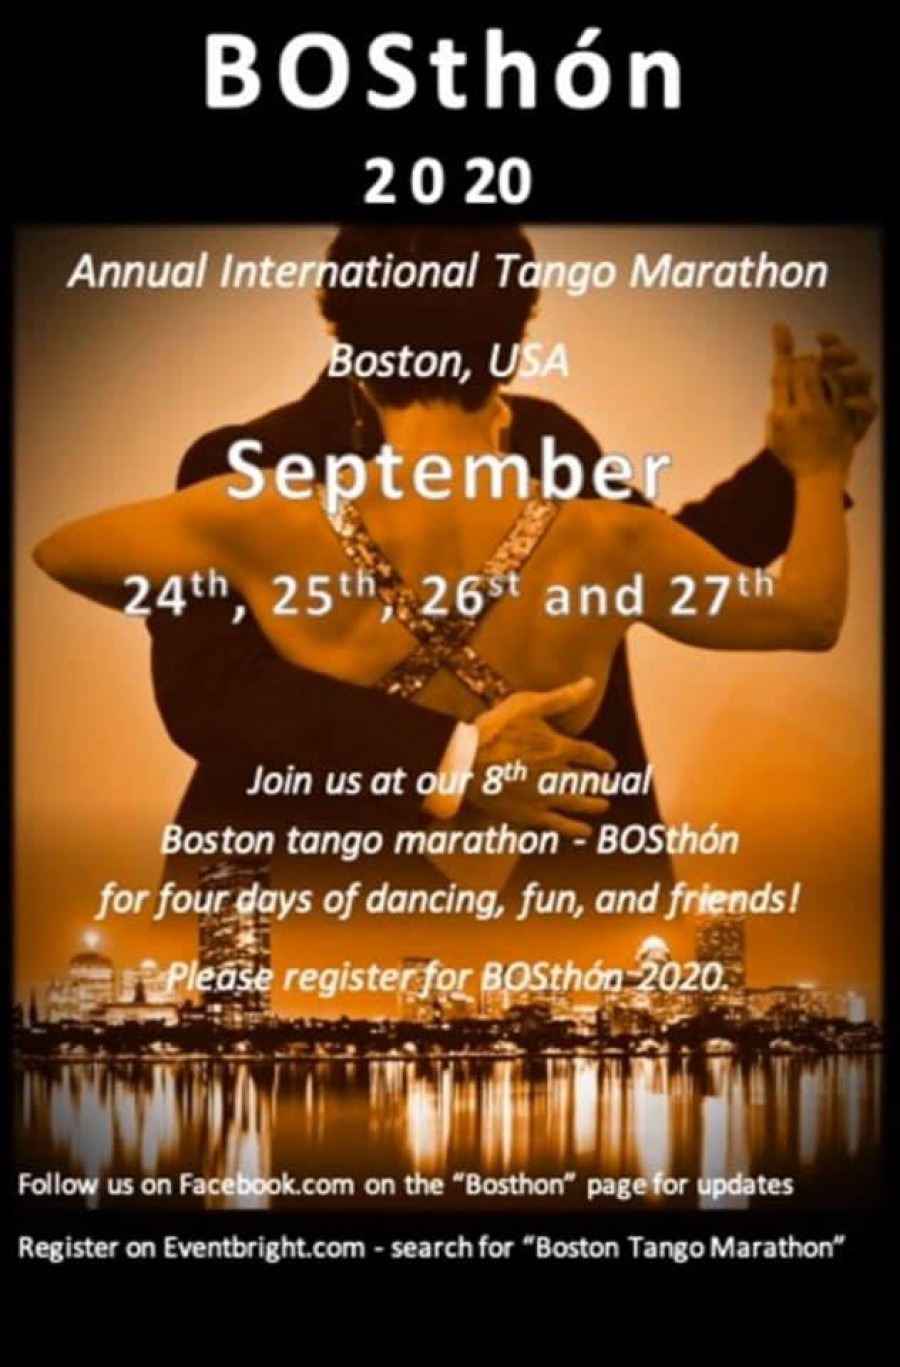 Boston Tango Marathon -BOSthon